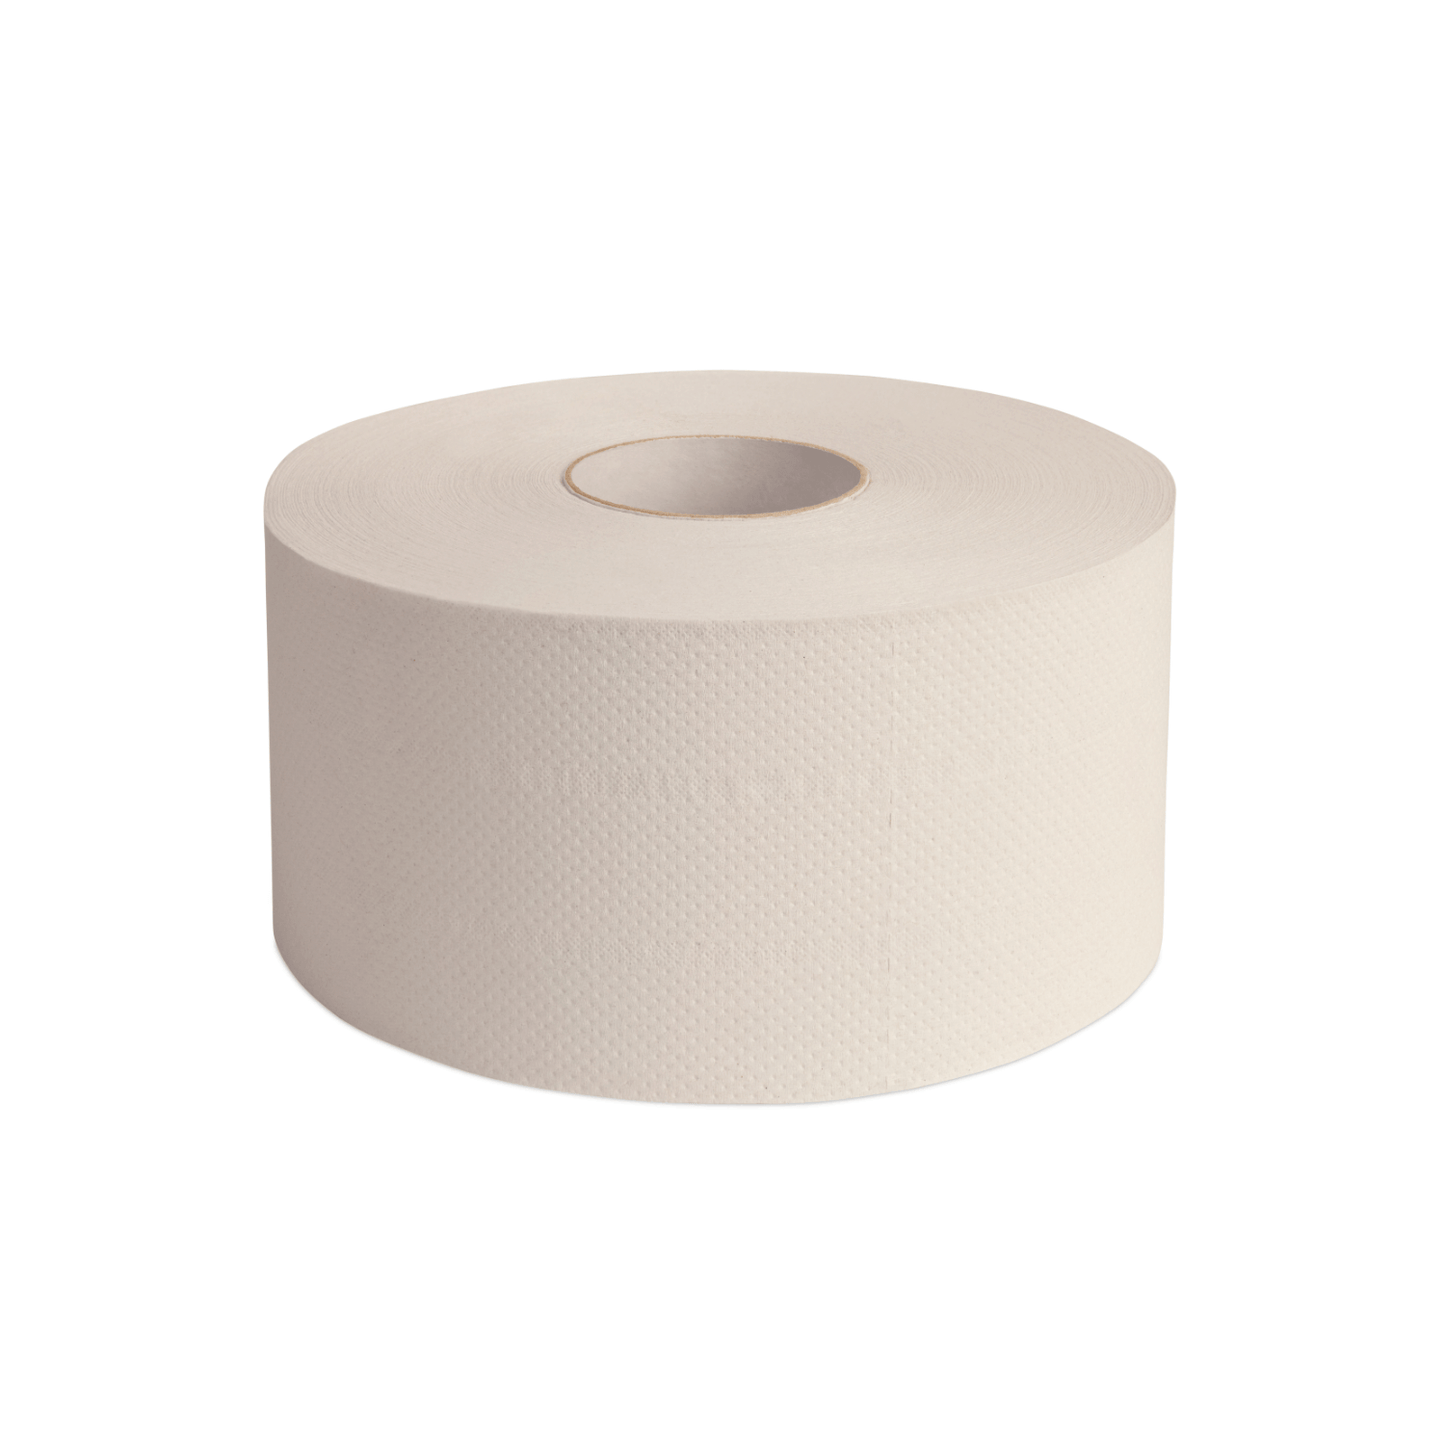 JUTTA-RENATE Toilettenpapier Jumborolle Mini Ø 19cm Schön weiß 2-lagig  16 x 180m